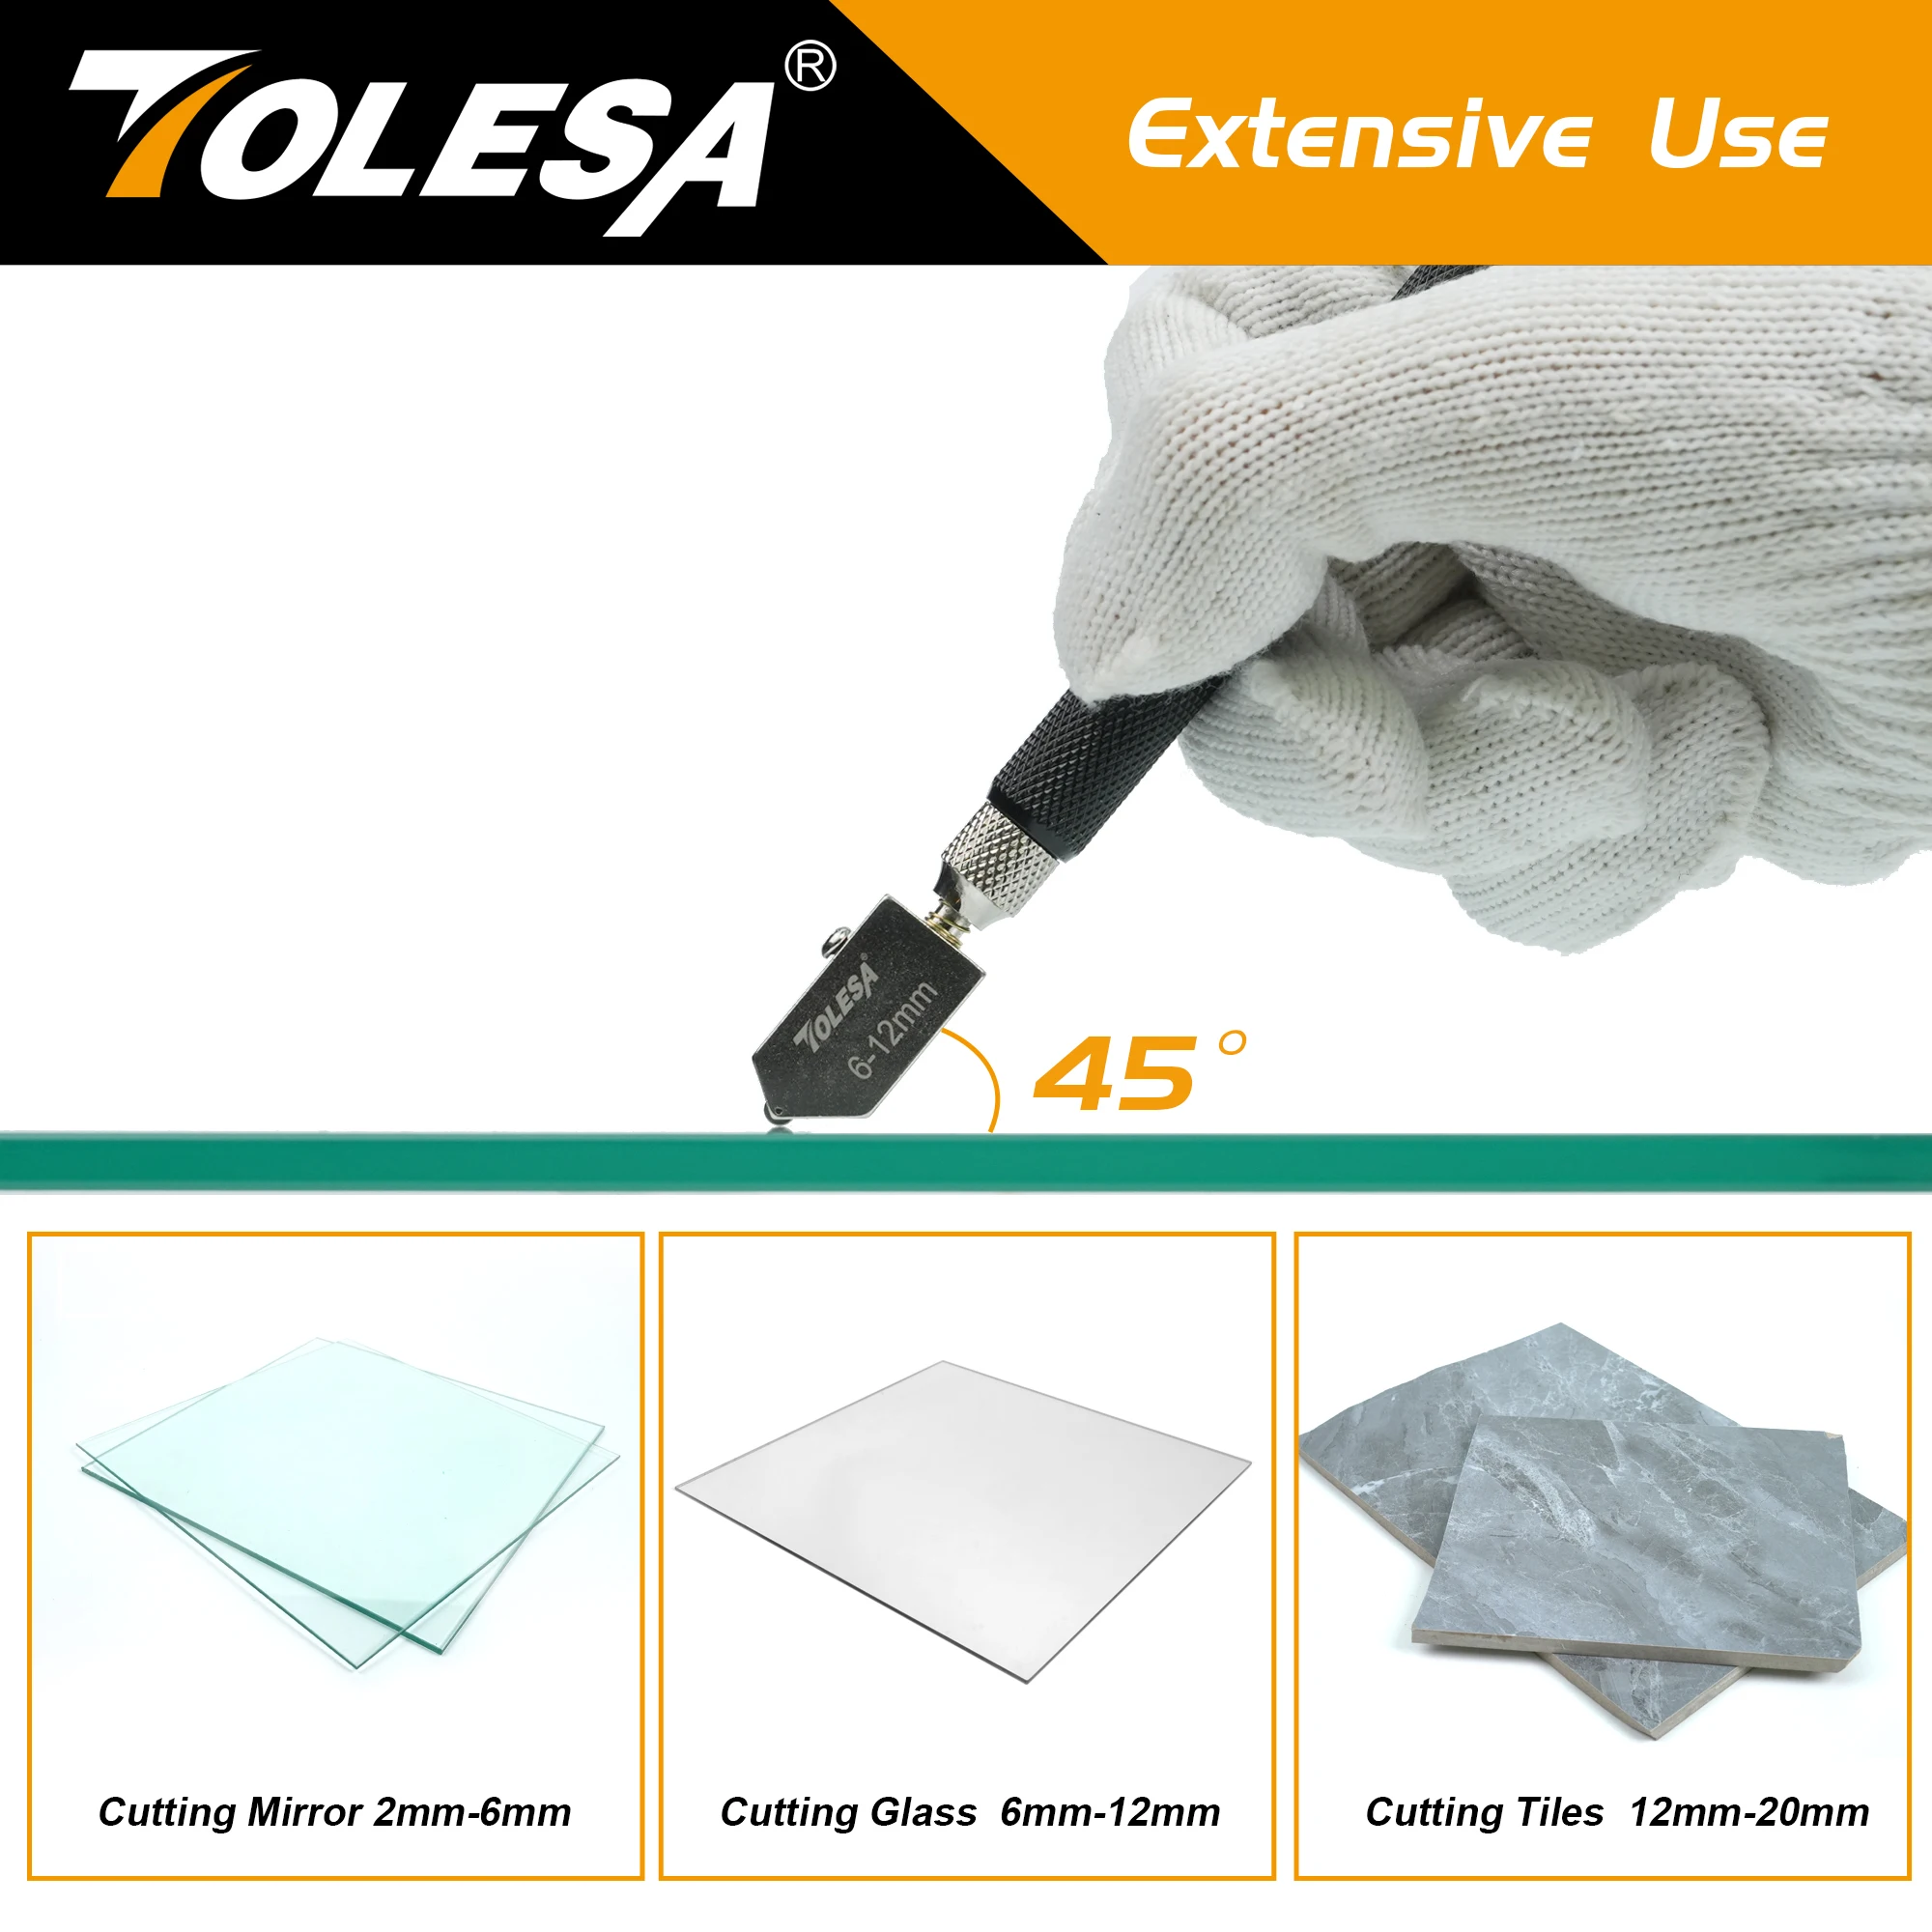 Tolesa Glass ch neider 2mm-20mm Kits, Glass chneid werkzeug mit automatischer Öl zufuhr und Box, Glass ch neider für Spiegel/Fliesen/Mosaik